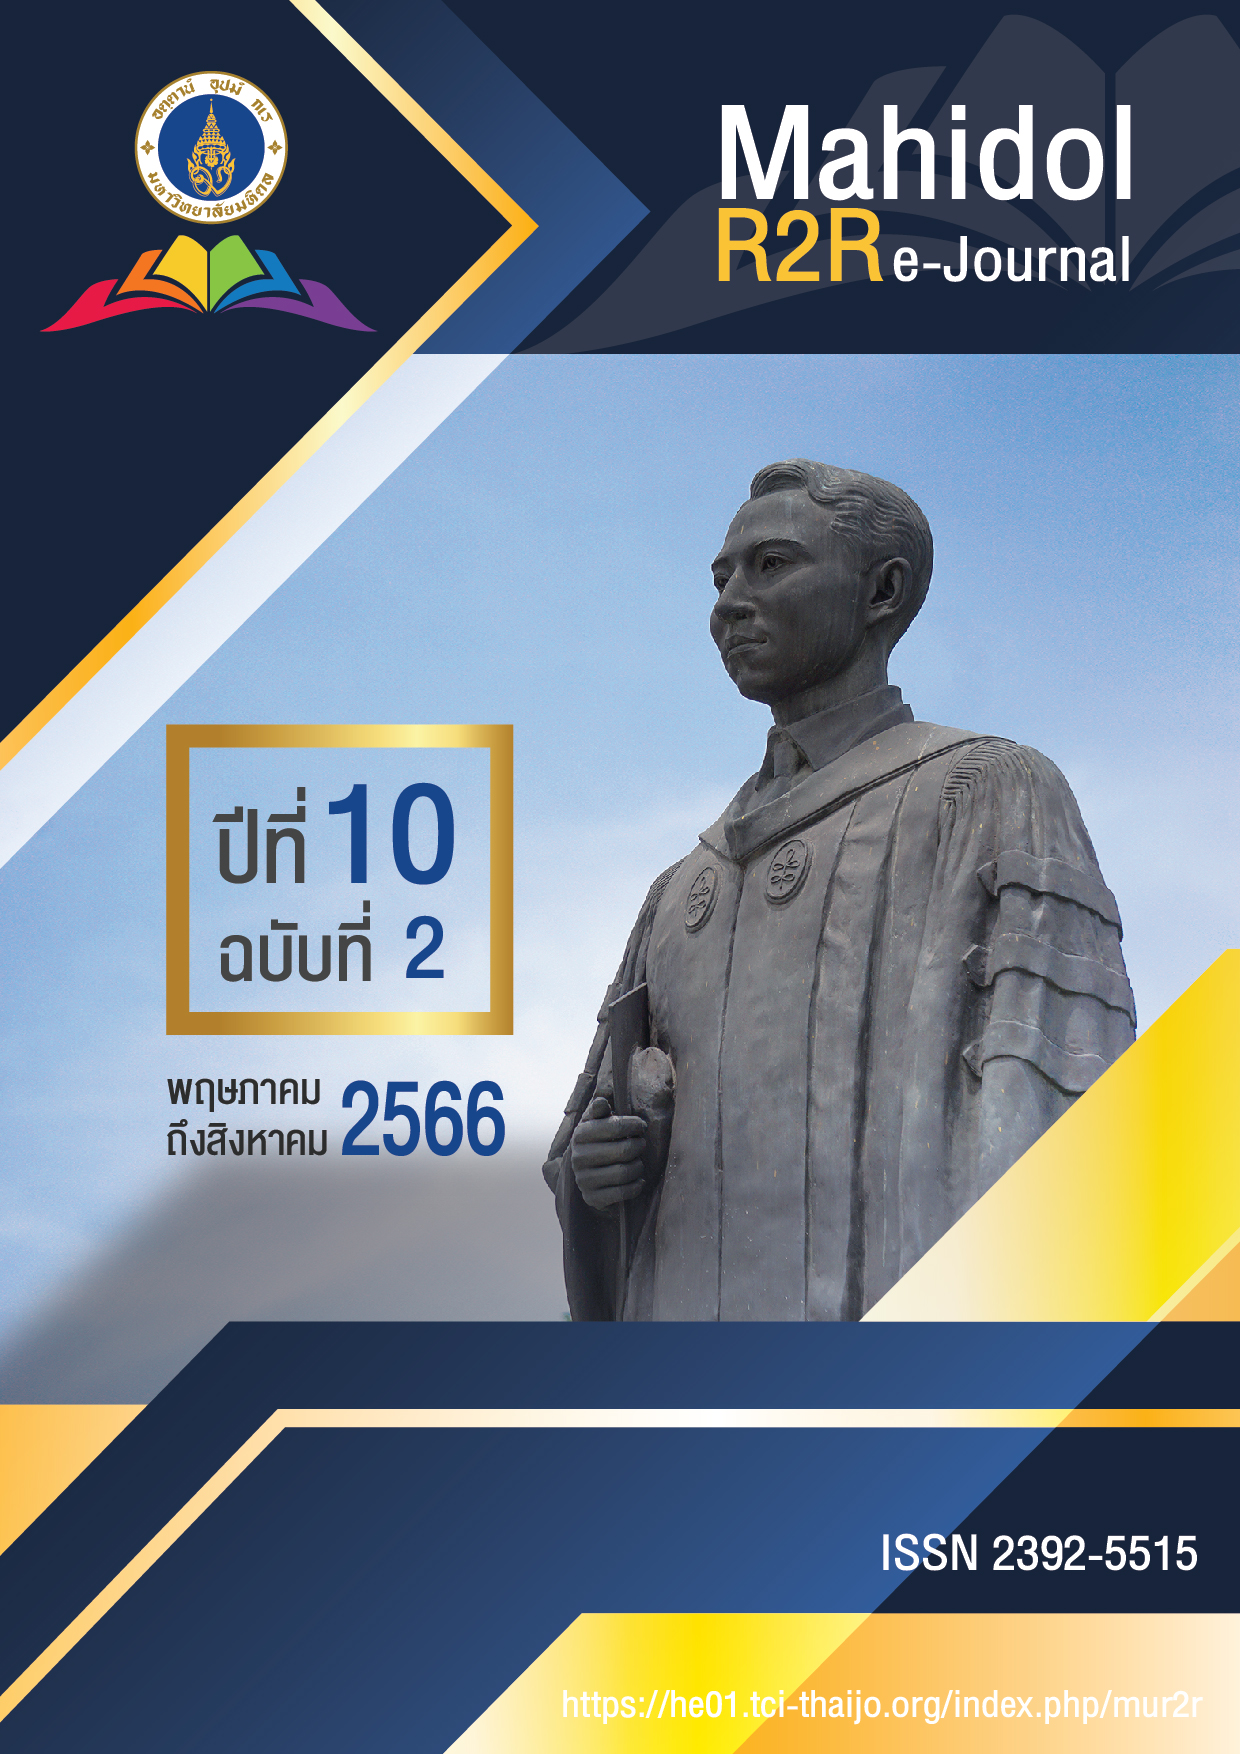 					ดู ปีที่ 10 ฉบับที่ 2 (2566): Mahidol R2R e-Journal
				